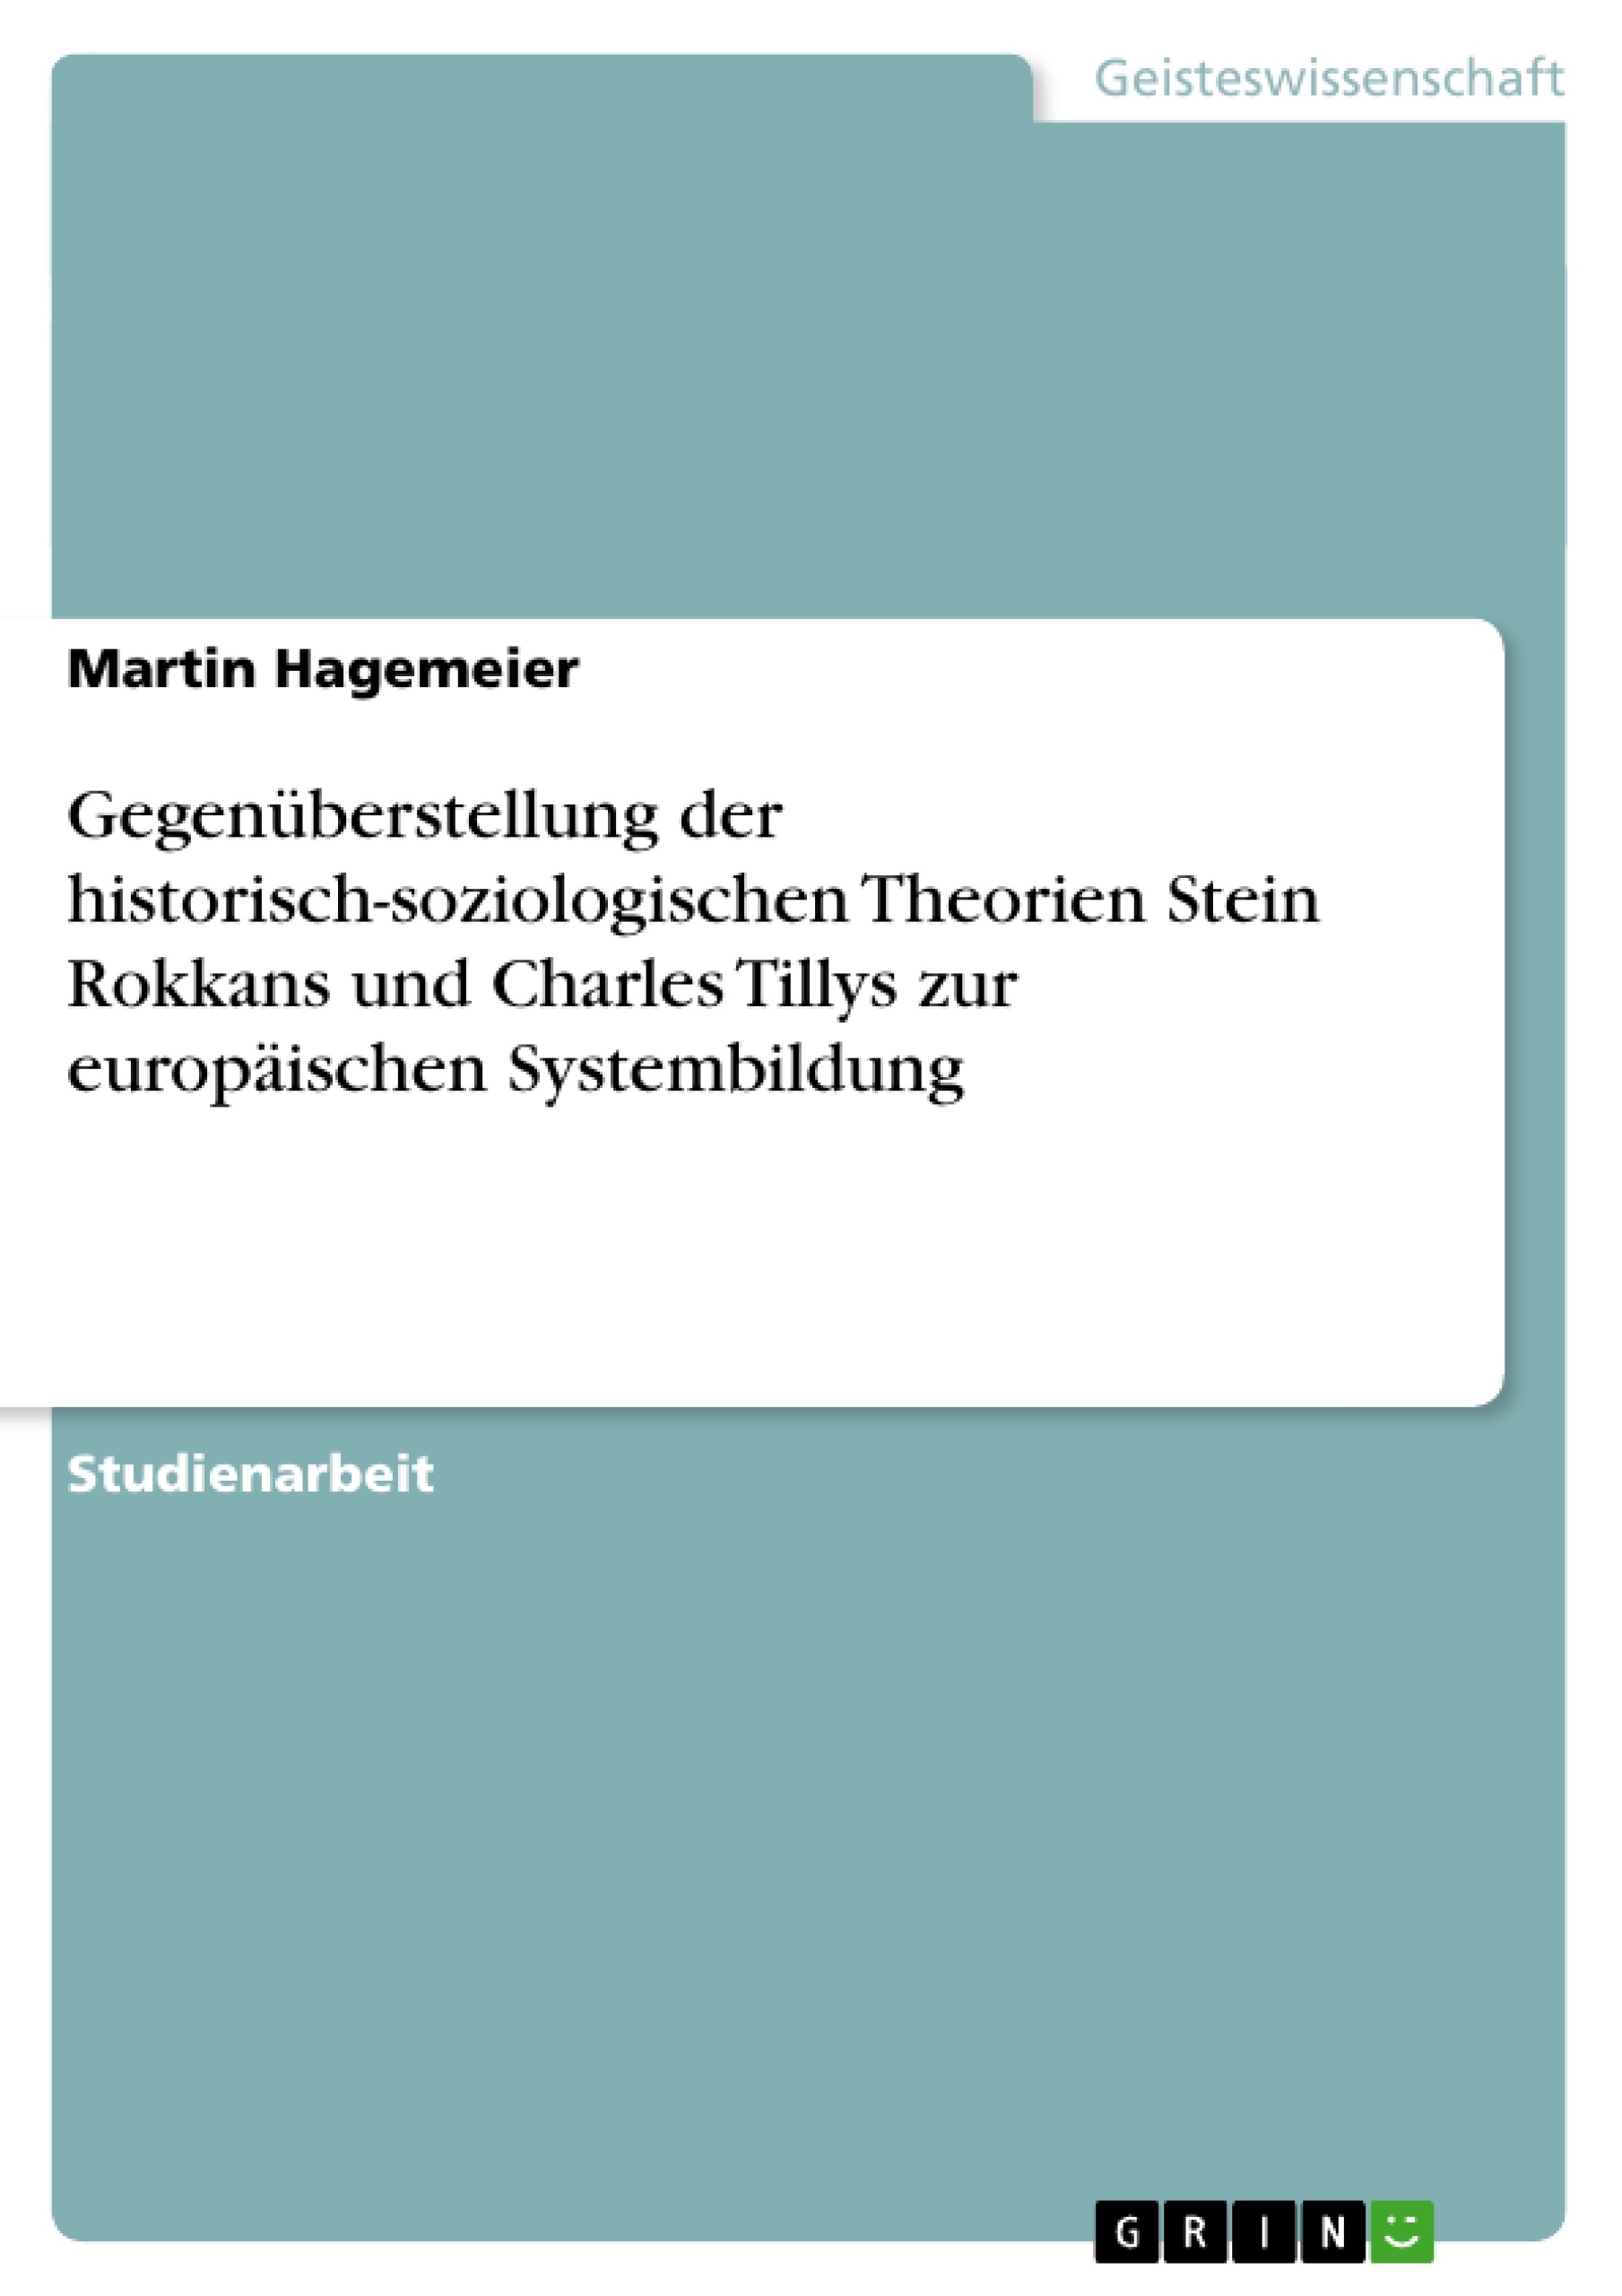 Titel: Gegenüberstellung der historisch-soziologischen Theorien Stein Rokkans und Charles Tillys zur europäischen Systembildung